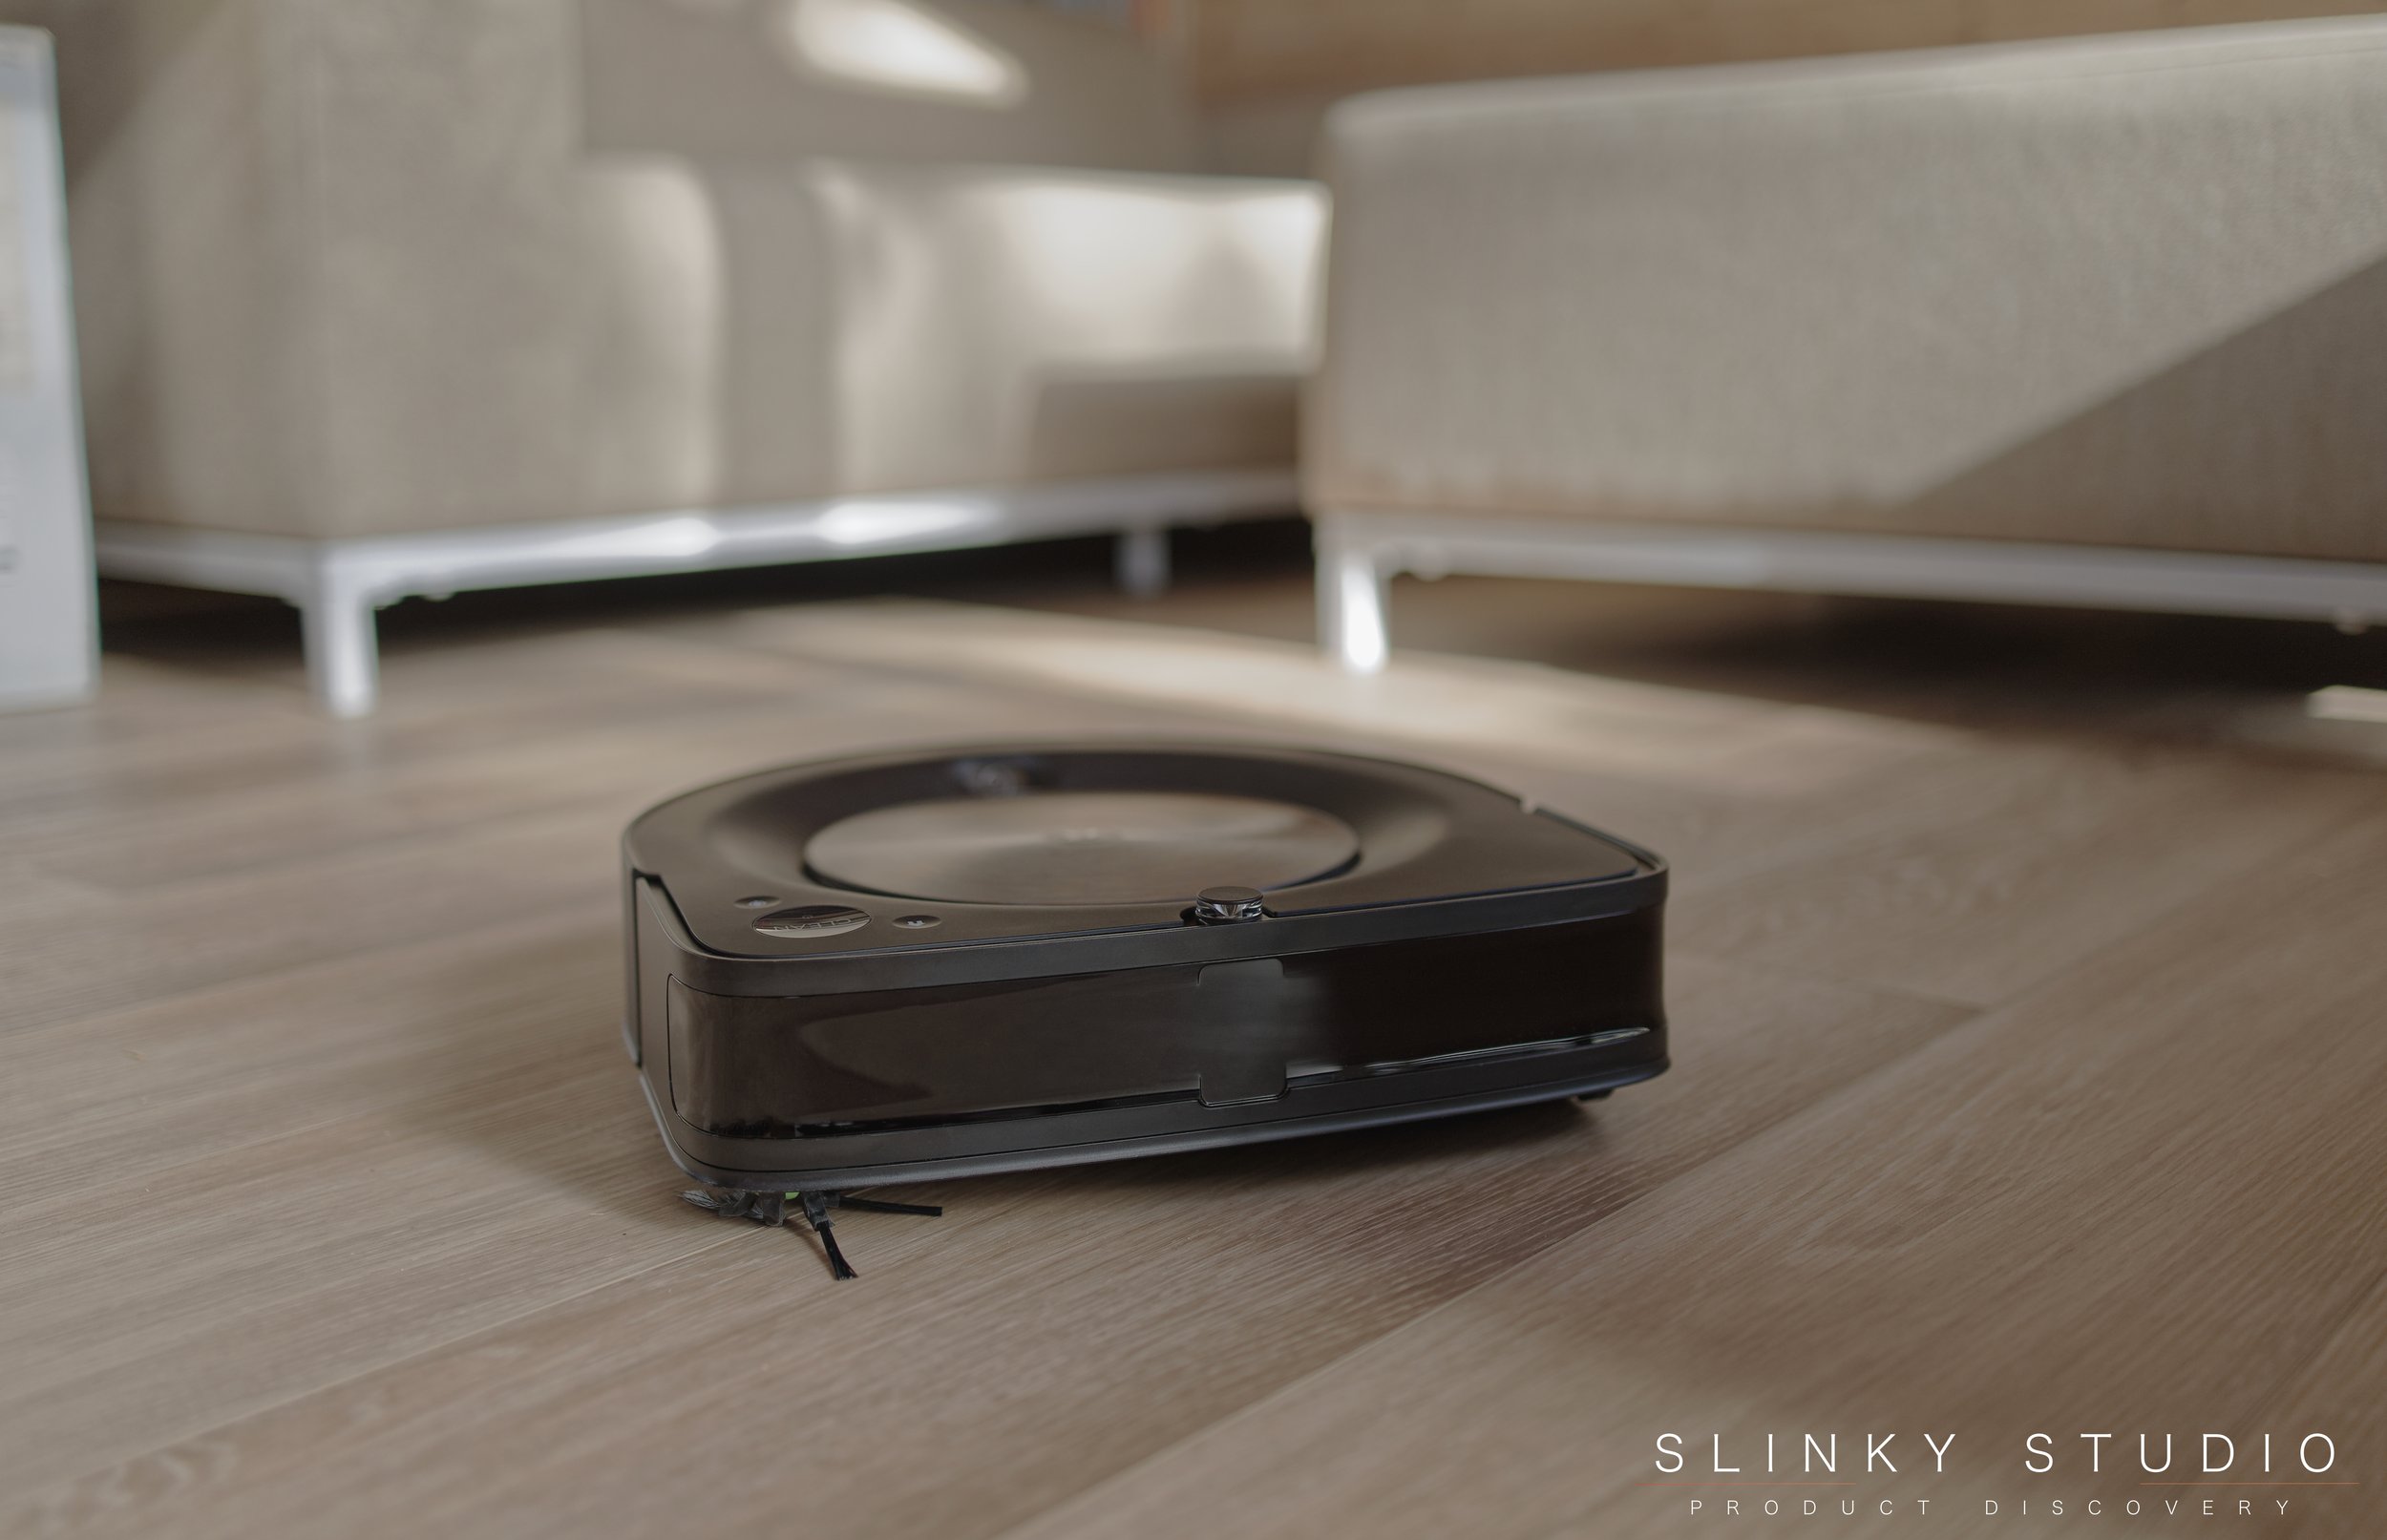 iRobot Roomba s9+ Robot Cleaner Front View.jpg